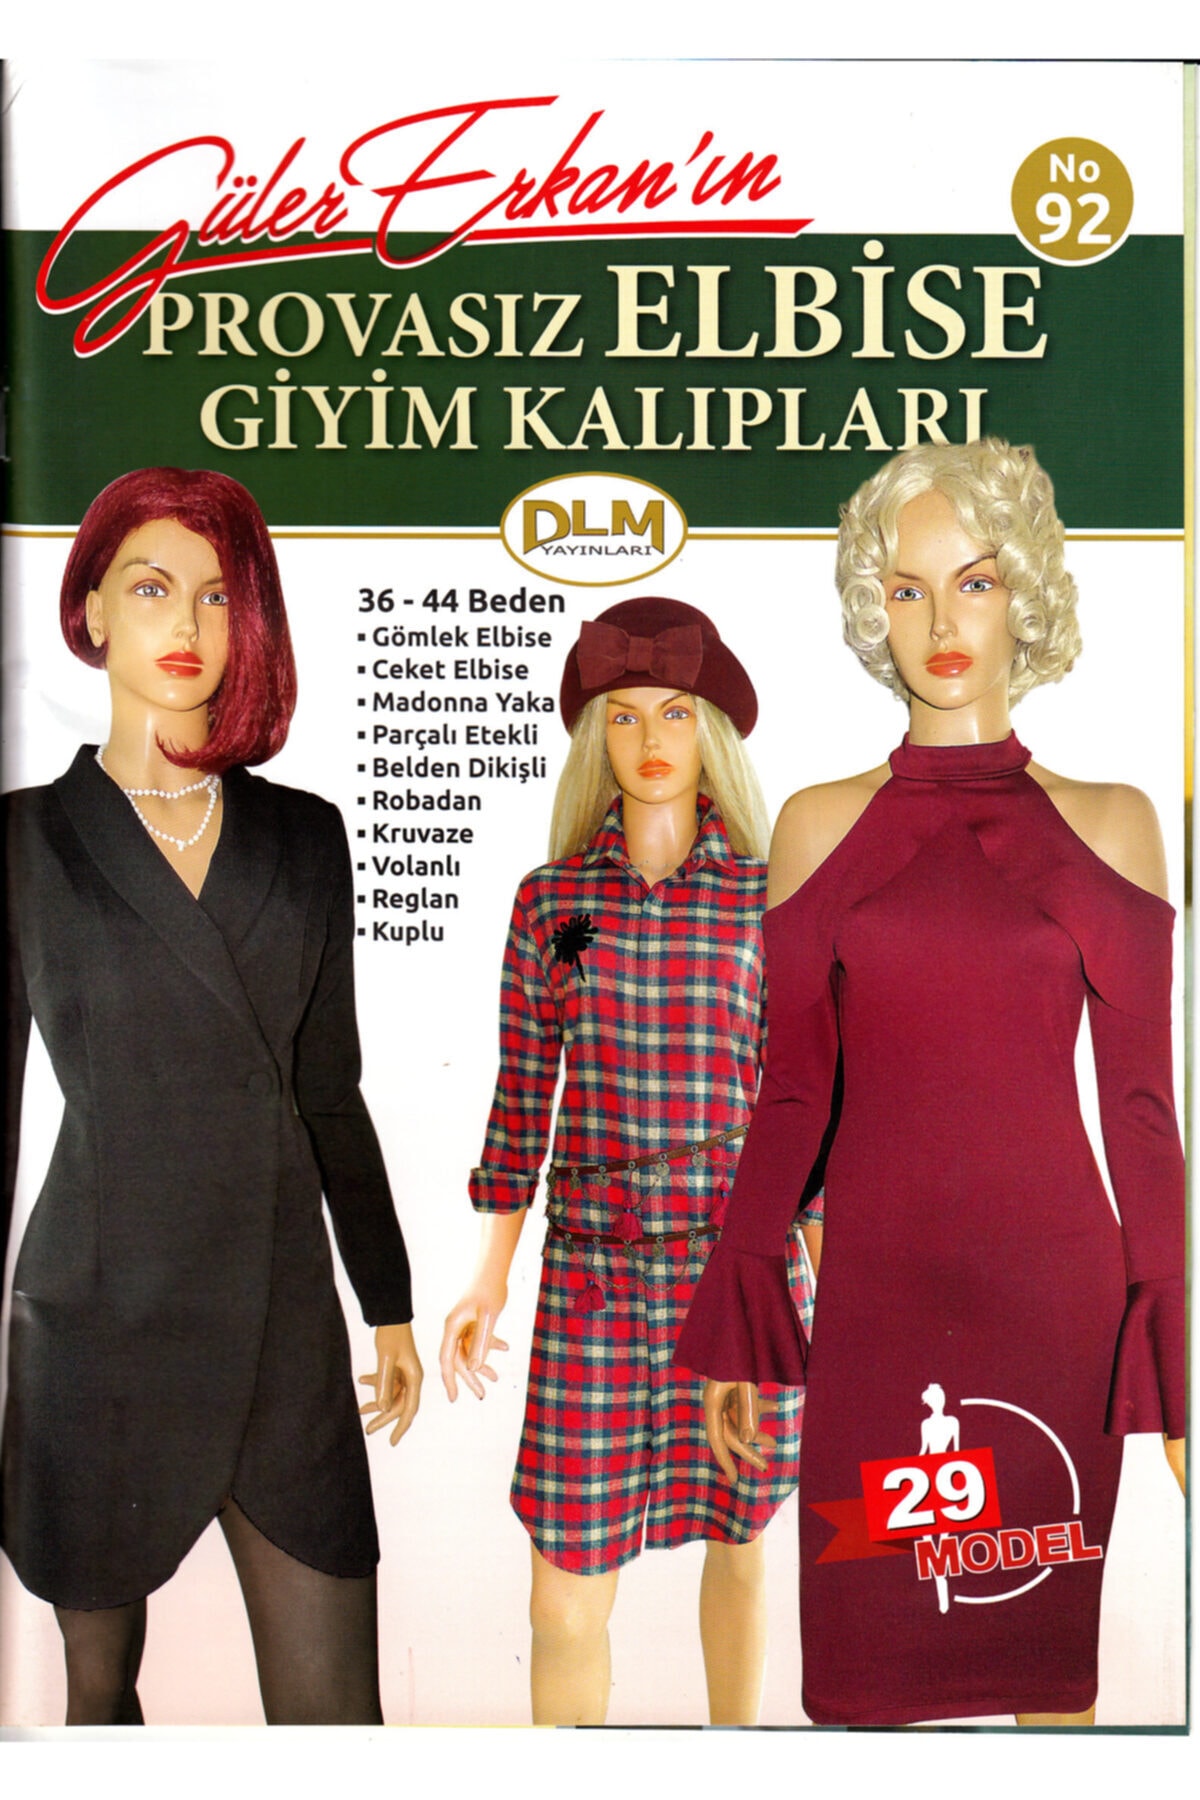 Dilem Yayınları Güler Erkan Provasız Çeşitli Elbise Giyim Kalıpları No:92